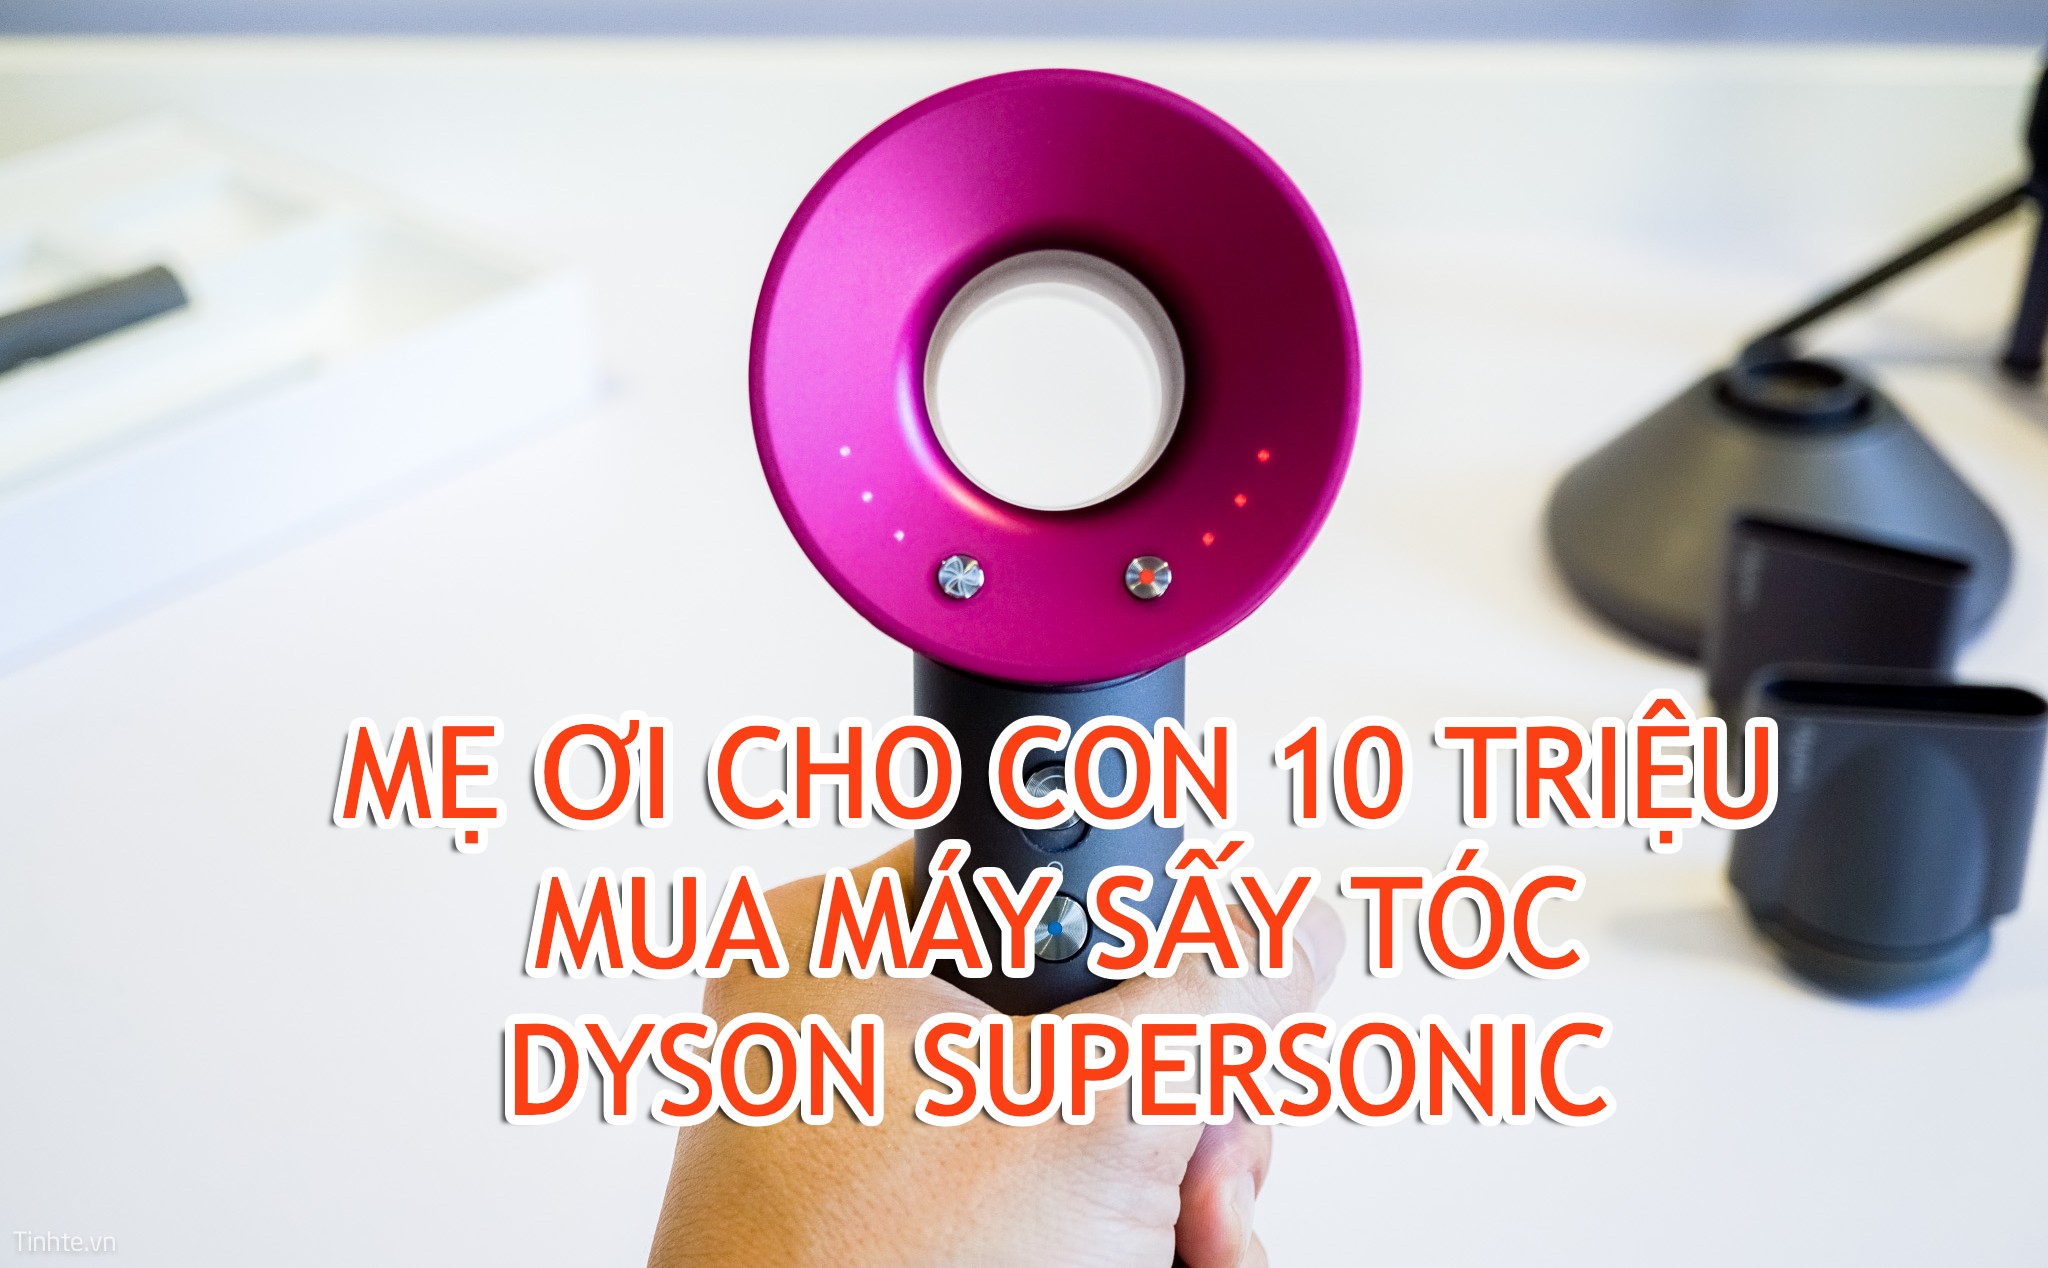 Trên tay máy sấy tóc 10 triệu Dyson Supersonic: Cái gì cũng có giá của nó!